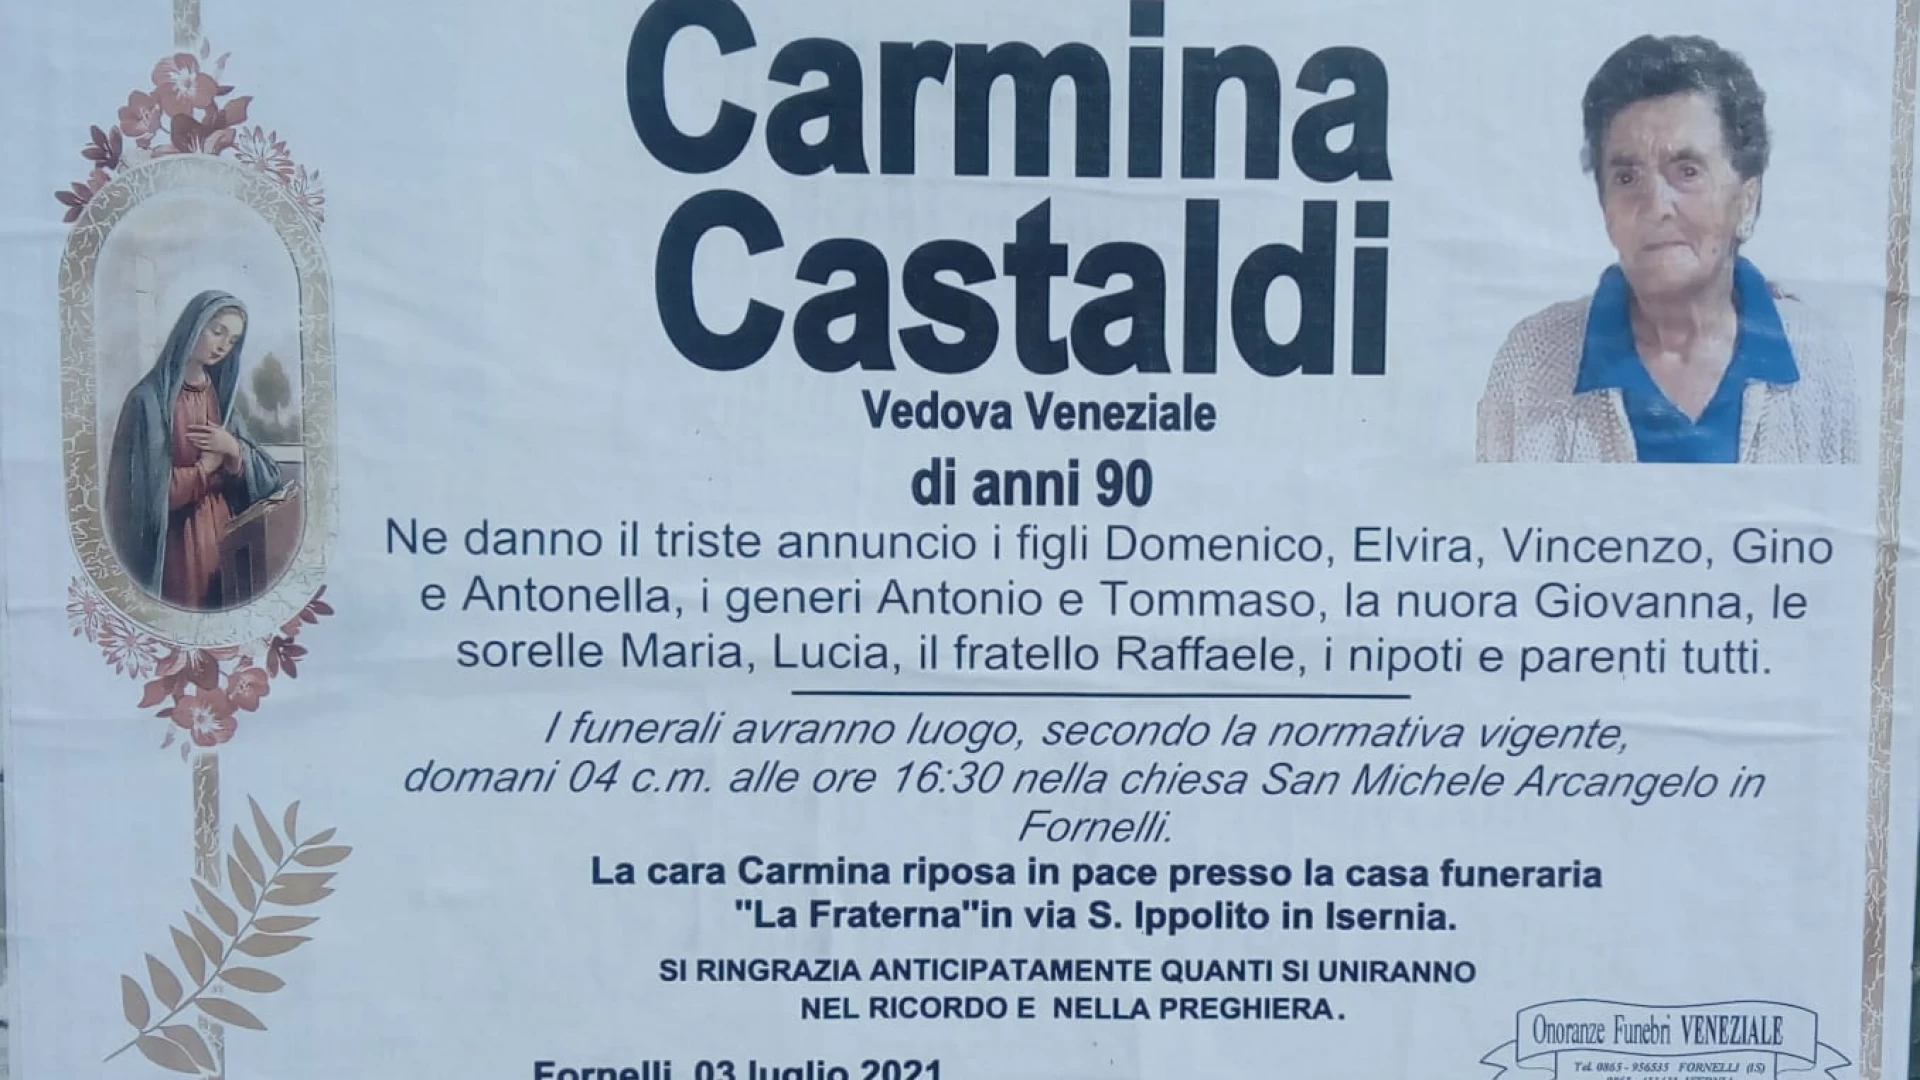 Fornelli: l'ultimo saluto a Carmina Castaldi. I funerali nel pomeriggio alle ore 16.30